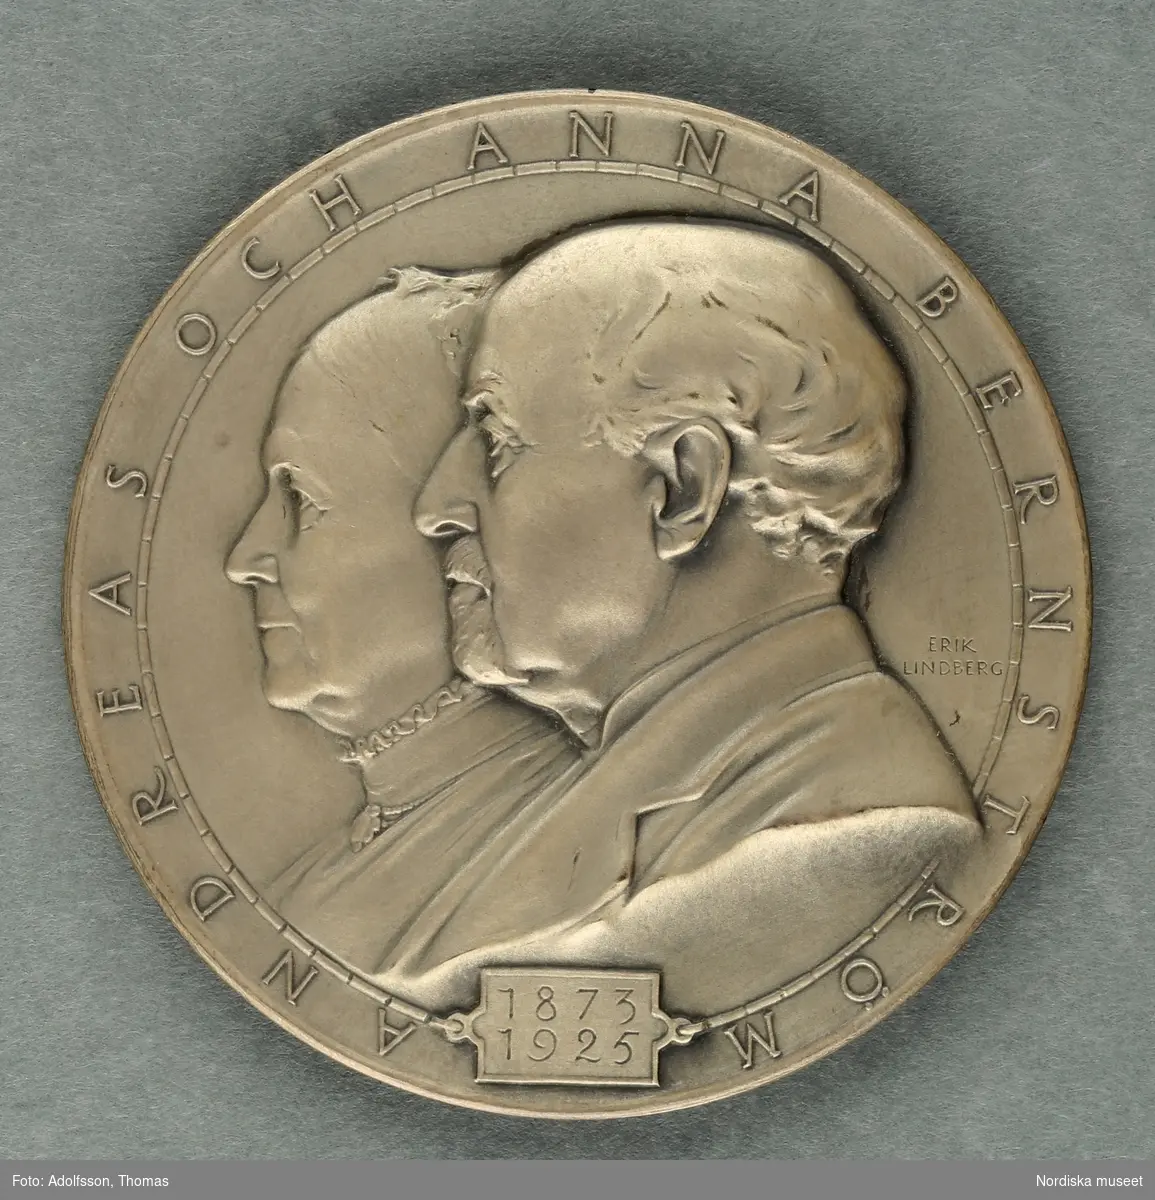 Numismatiker och pollettsamlare, en av stiftarna av Svenska numismatiska föreningen.